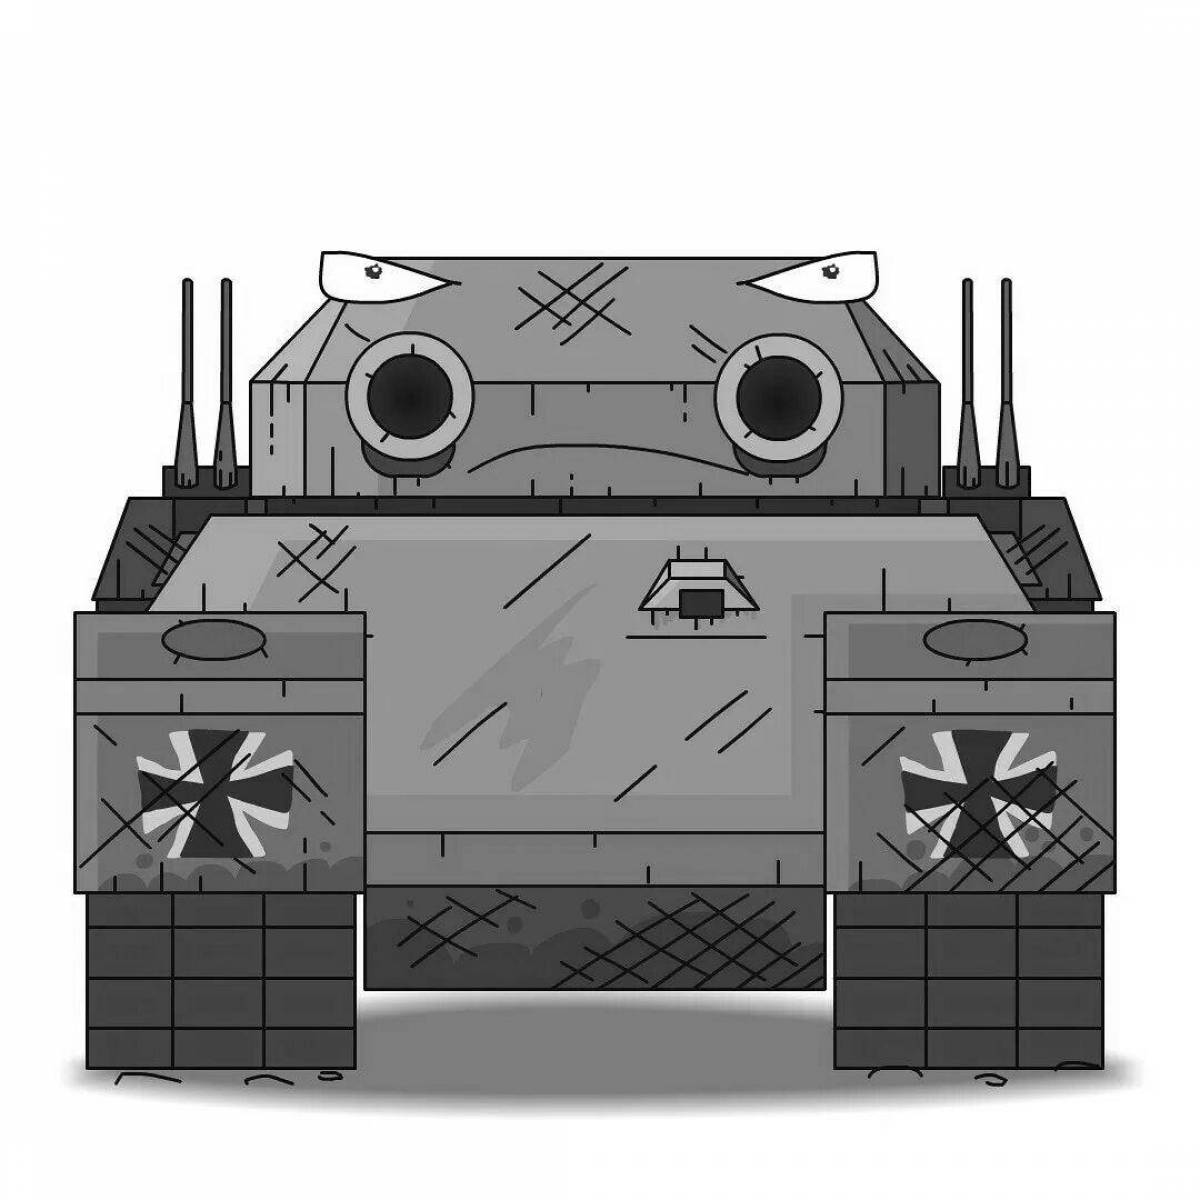 Немецкие танки геранда. РАТТЕ танк Геранд. Королевский РАТТЕ Геранда. Тг 5 сбоку танк Геранд.